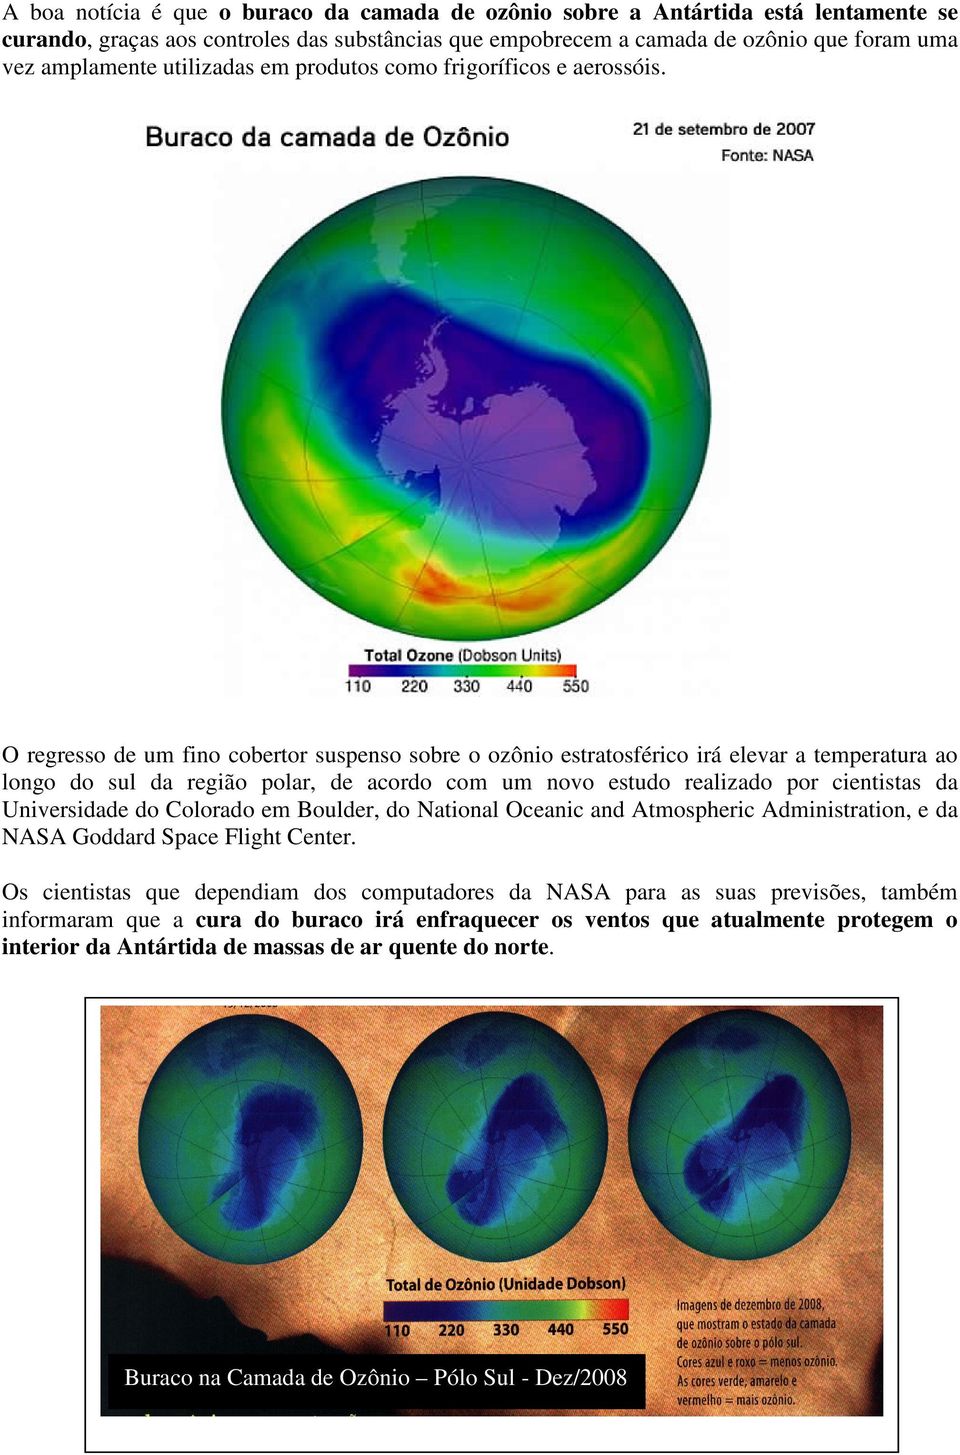 O regresso de um fino cobertor suspenso sobre o ozônio estratosférico irá elevar a temperatura ao longo do sul da região polar, de acordo com um novo estudo realizado por cientistas da Universidade